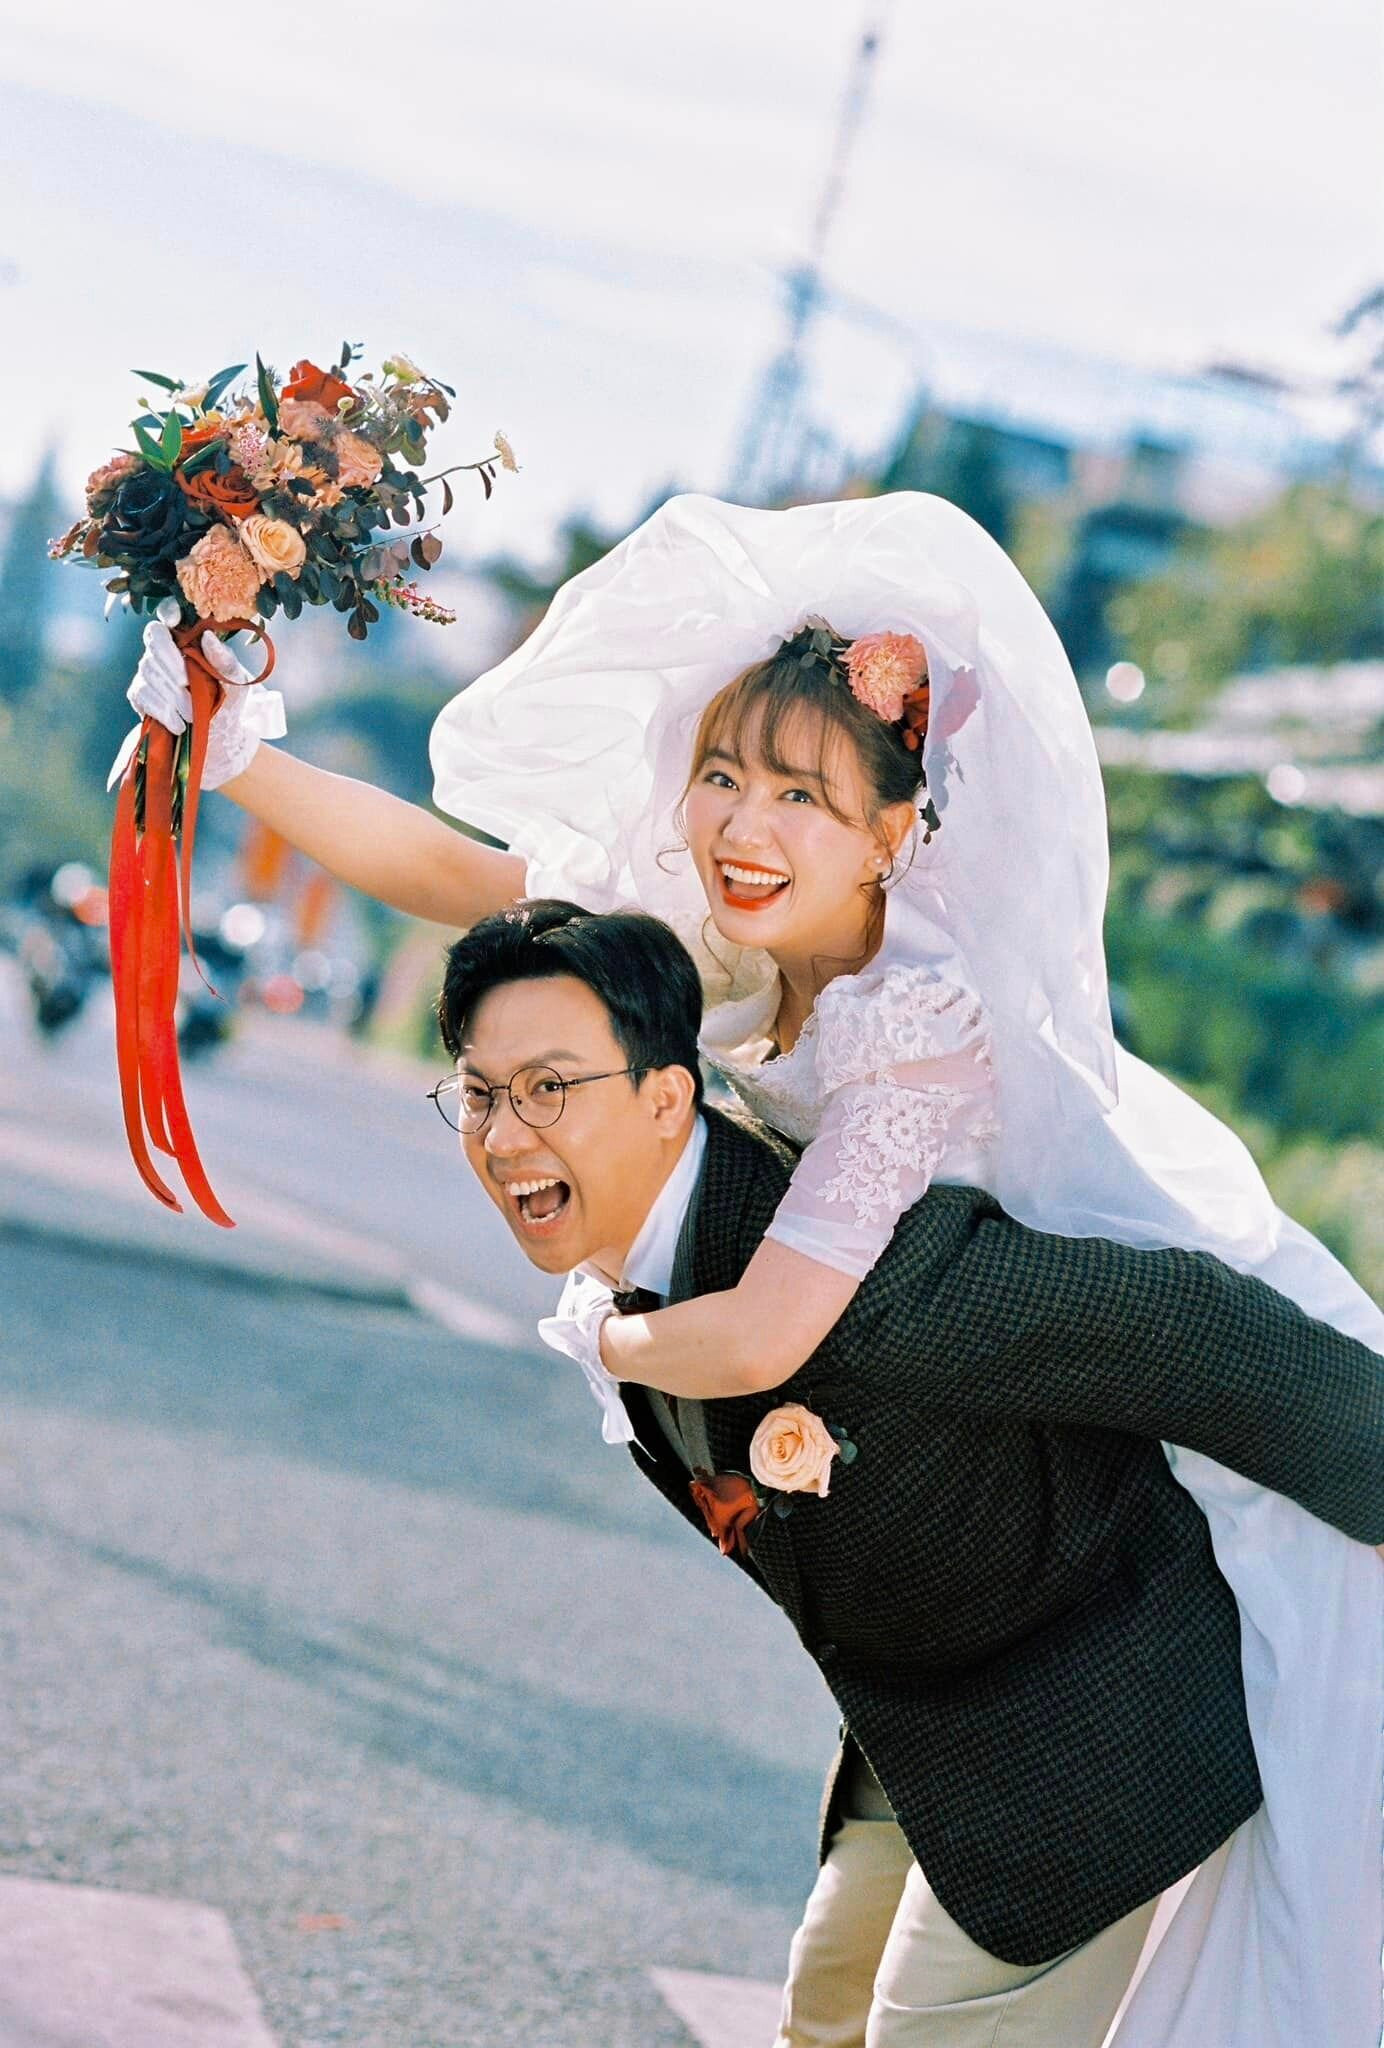 Đăng tải bộ ảnh kỷ niệm 7 năm ngày cưới, Trấn Thành có những lời nhắn nhủ ngọt ngào với Hari Won: 